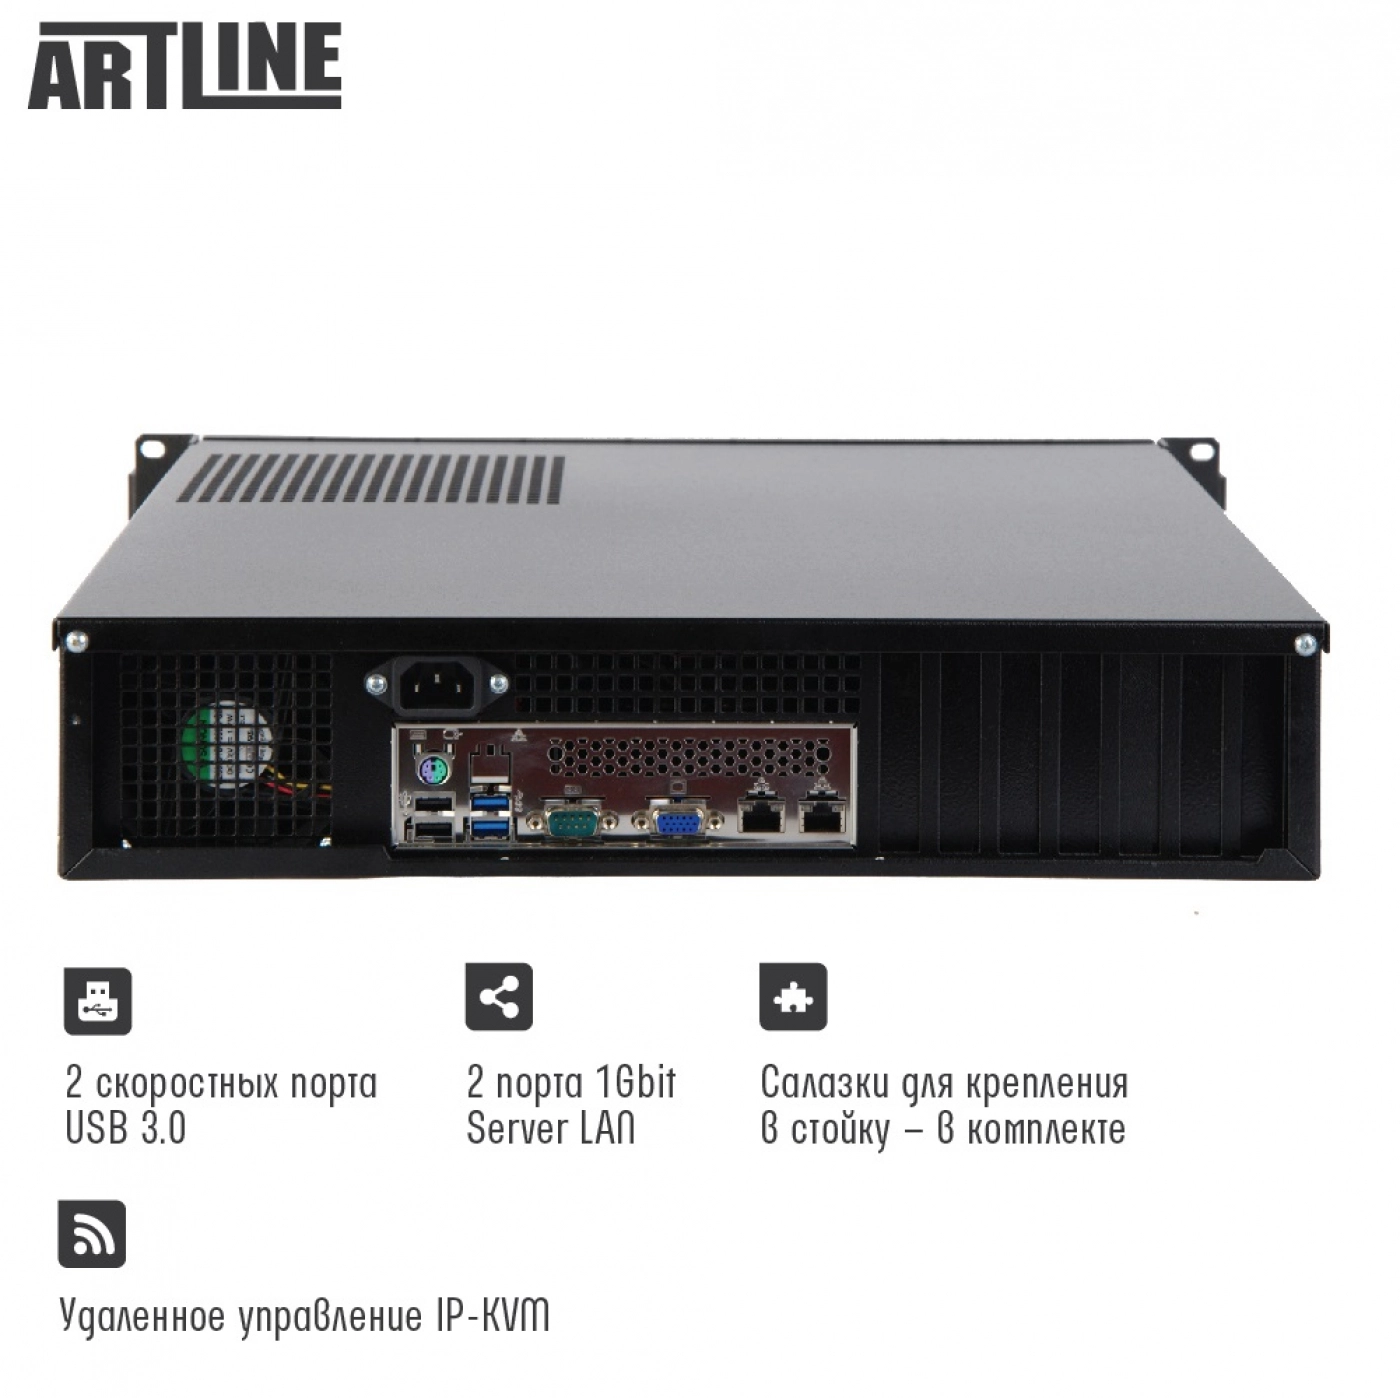 Купить Сервер ARTLINE Business R77v11 - фото 3